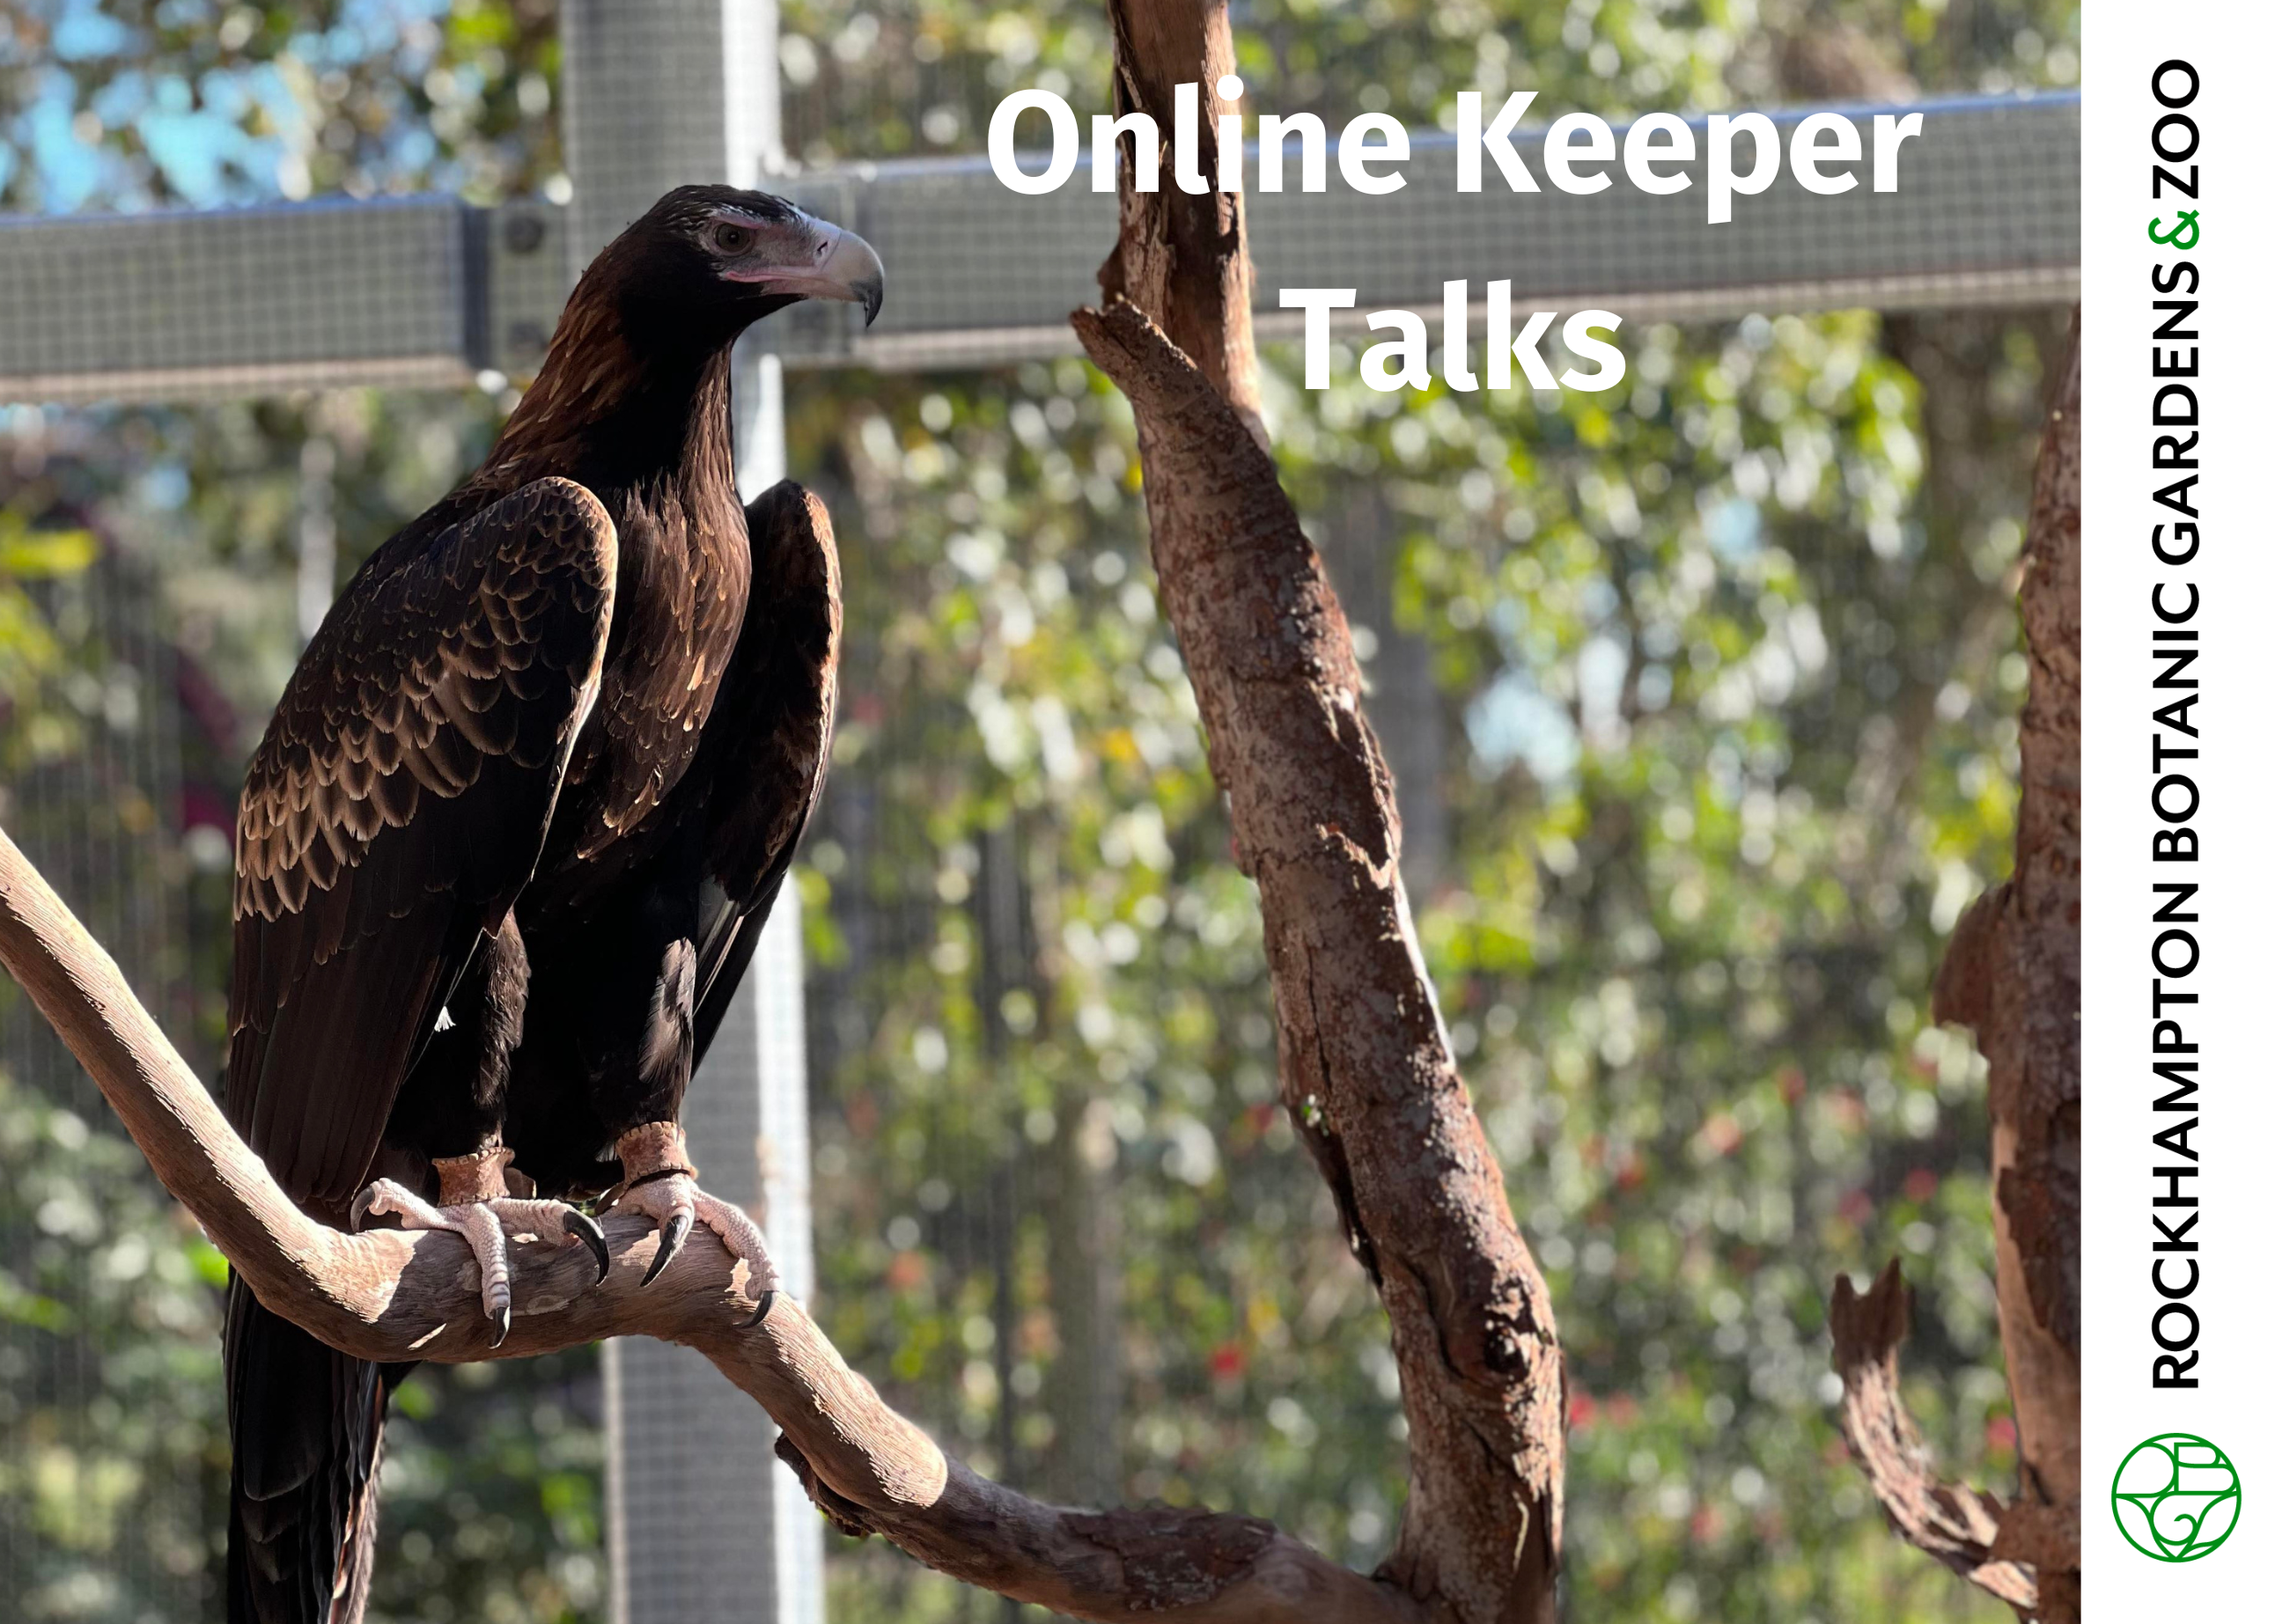 Online keeper talks